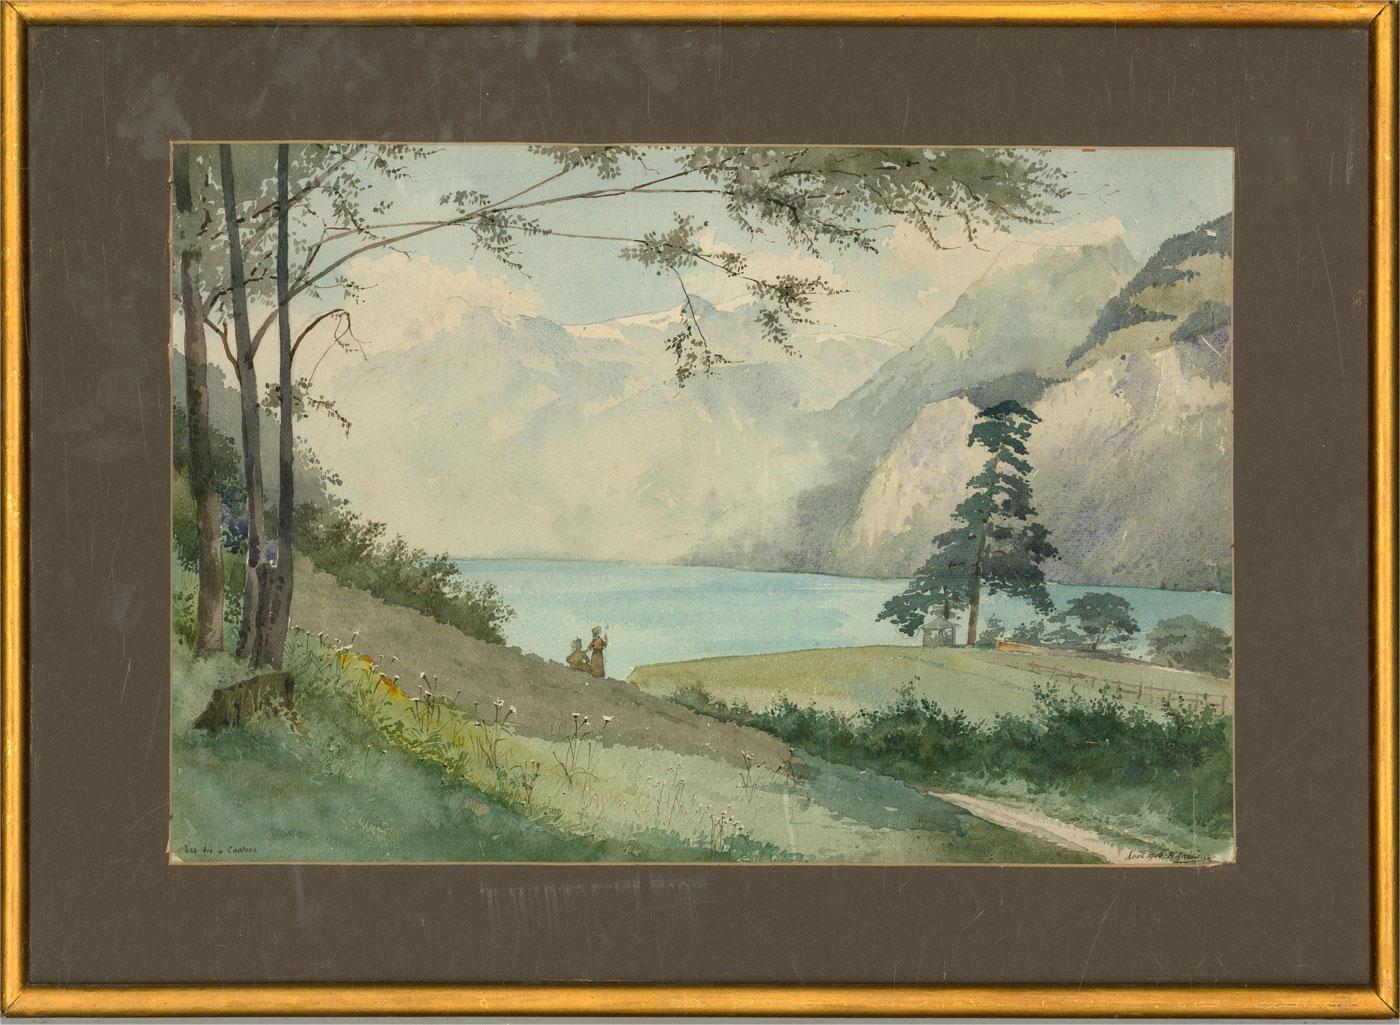 Ein feines und zartes Aquarell von R. Cailleux. Die Szene zeigt eine Landschaftsansicht mit zwei Figuren des Vierwaldstättersees (Lac des Quatre Cantons), des viertgrößten Sees der Schweiz. Signiert und datiert in der rechten unteren Ecke. Der